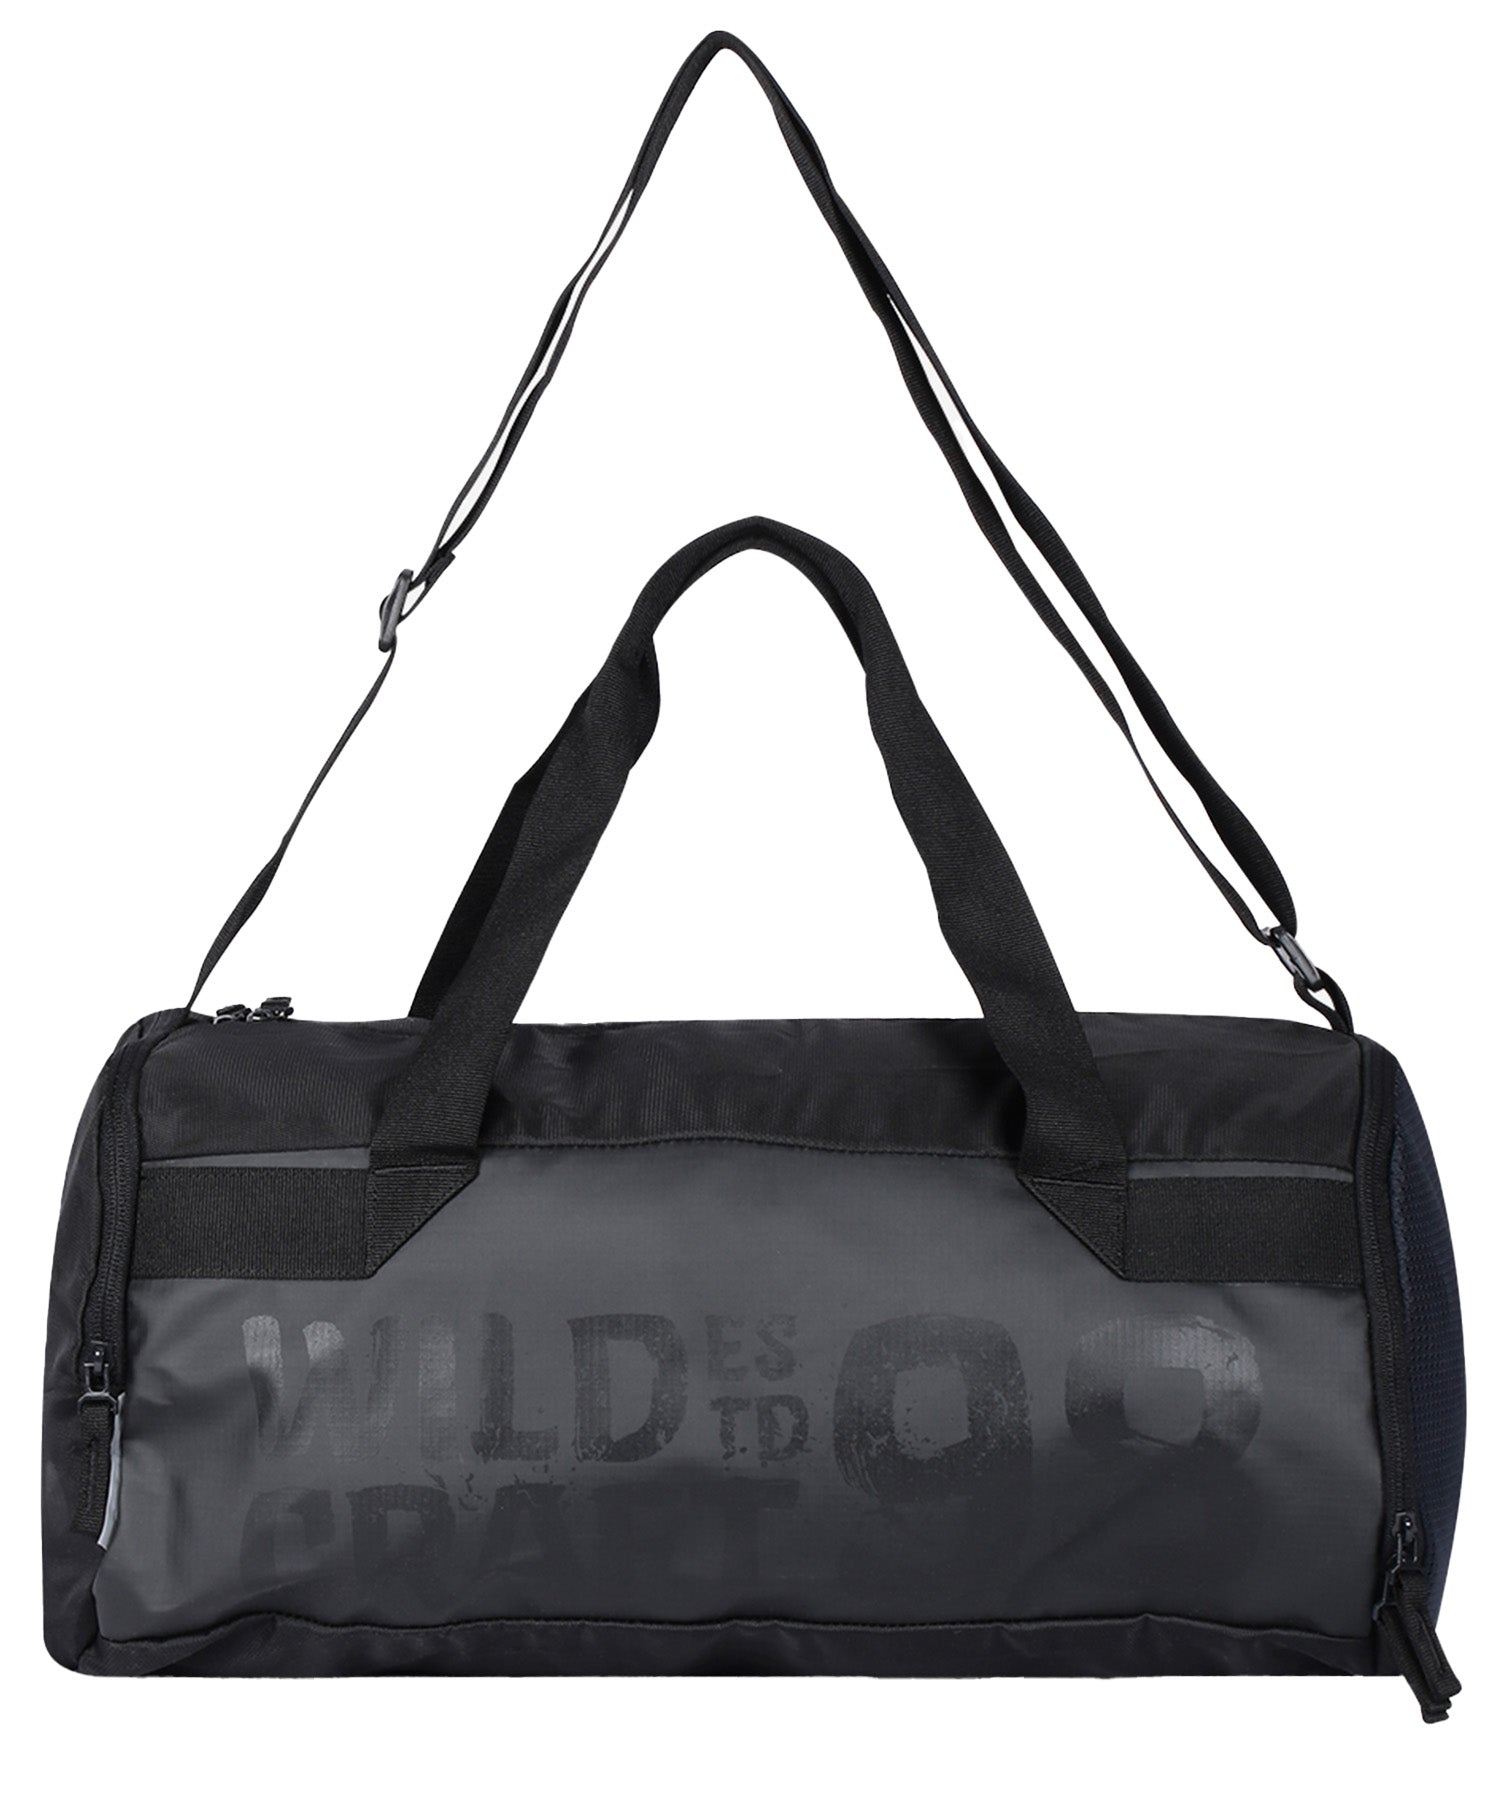 Wildcraft Gym2 36ltr Black Gym Bag, GYM2 BLACK